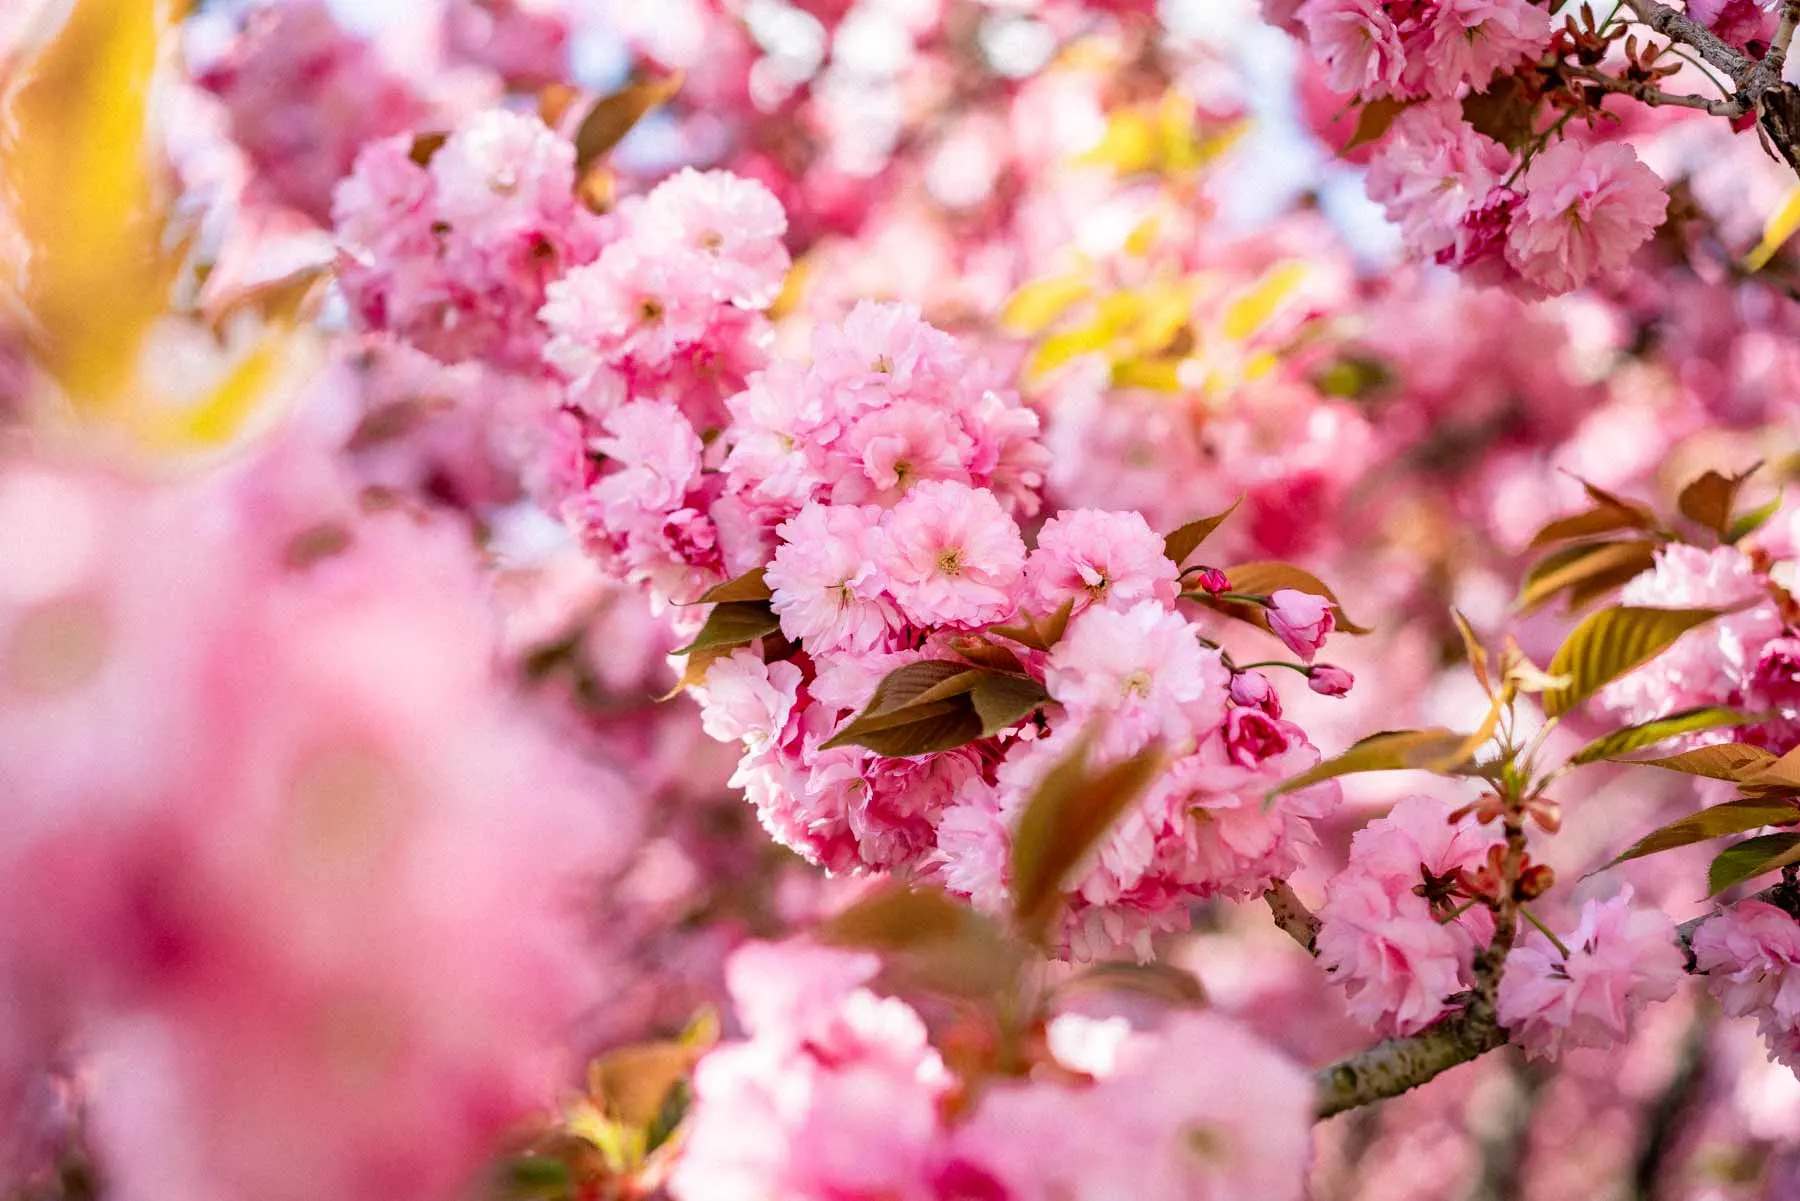 kwanzan cherry blossoms